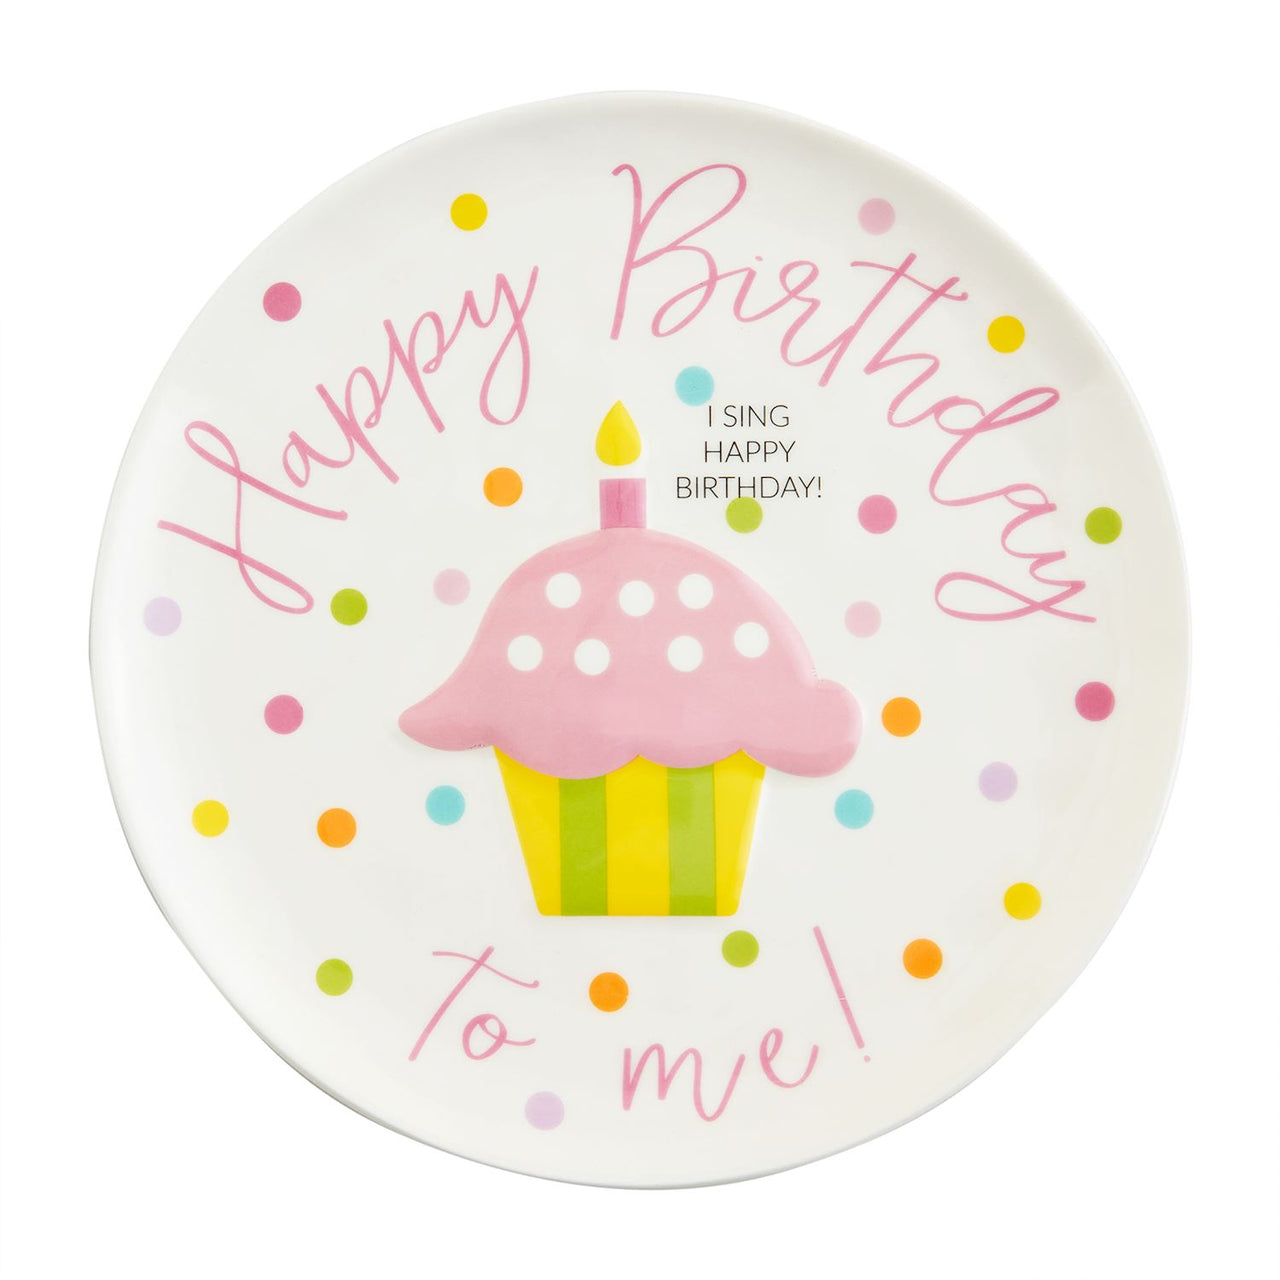 Mud Pie Singing Birthday Plate